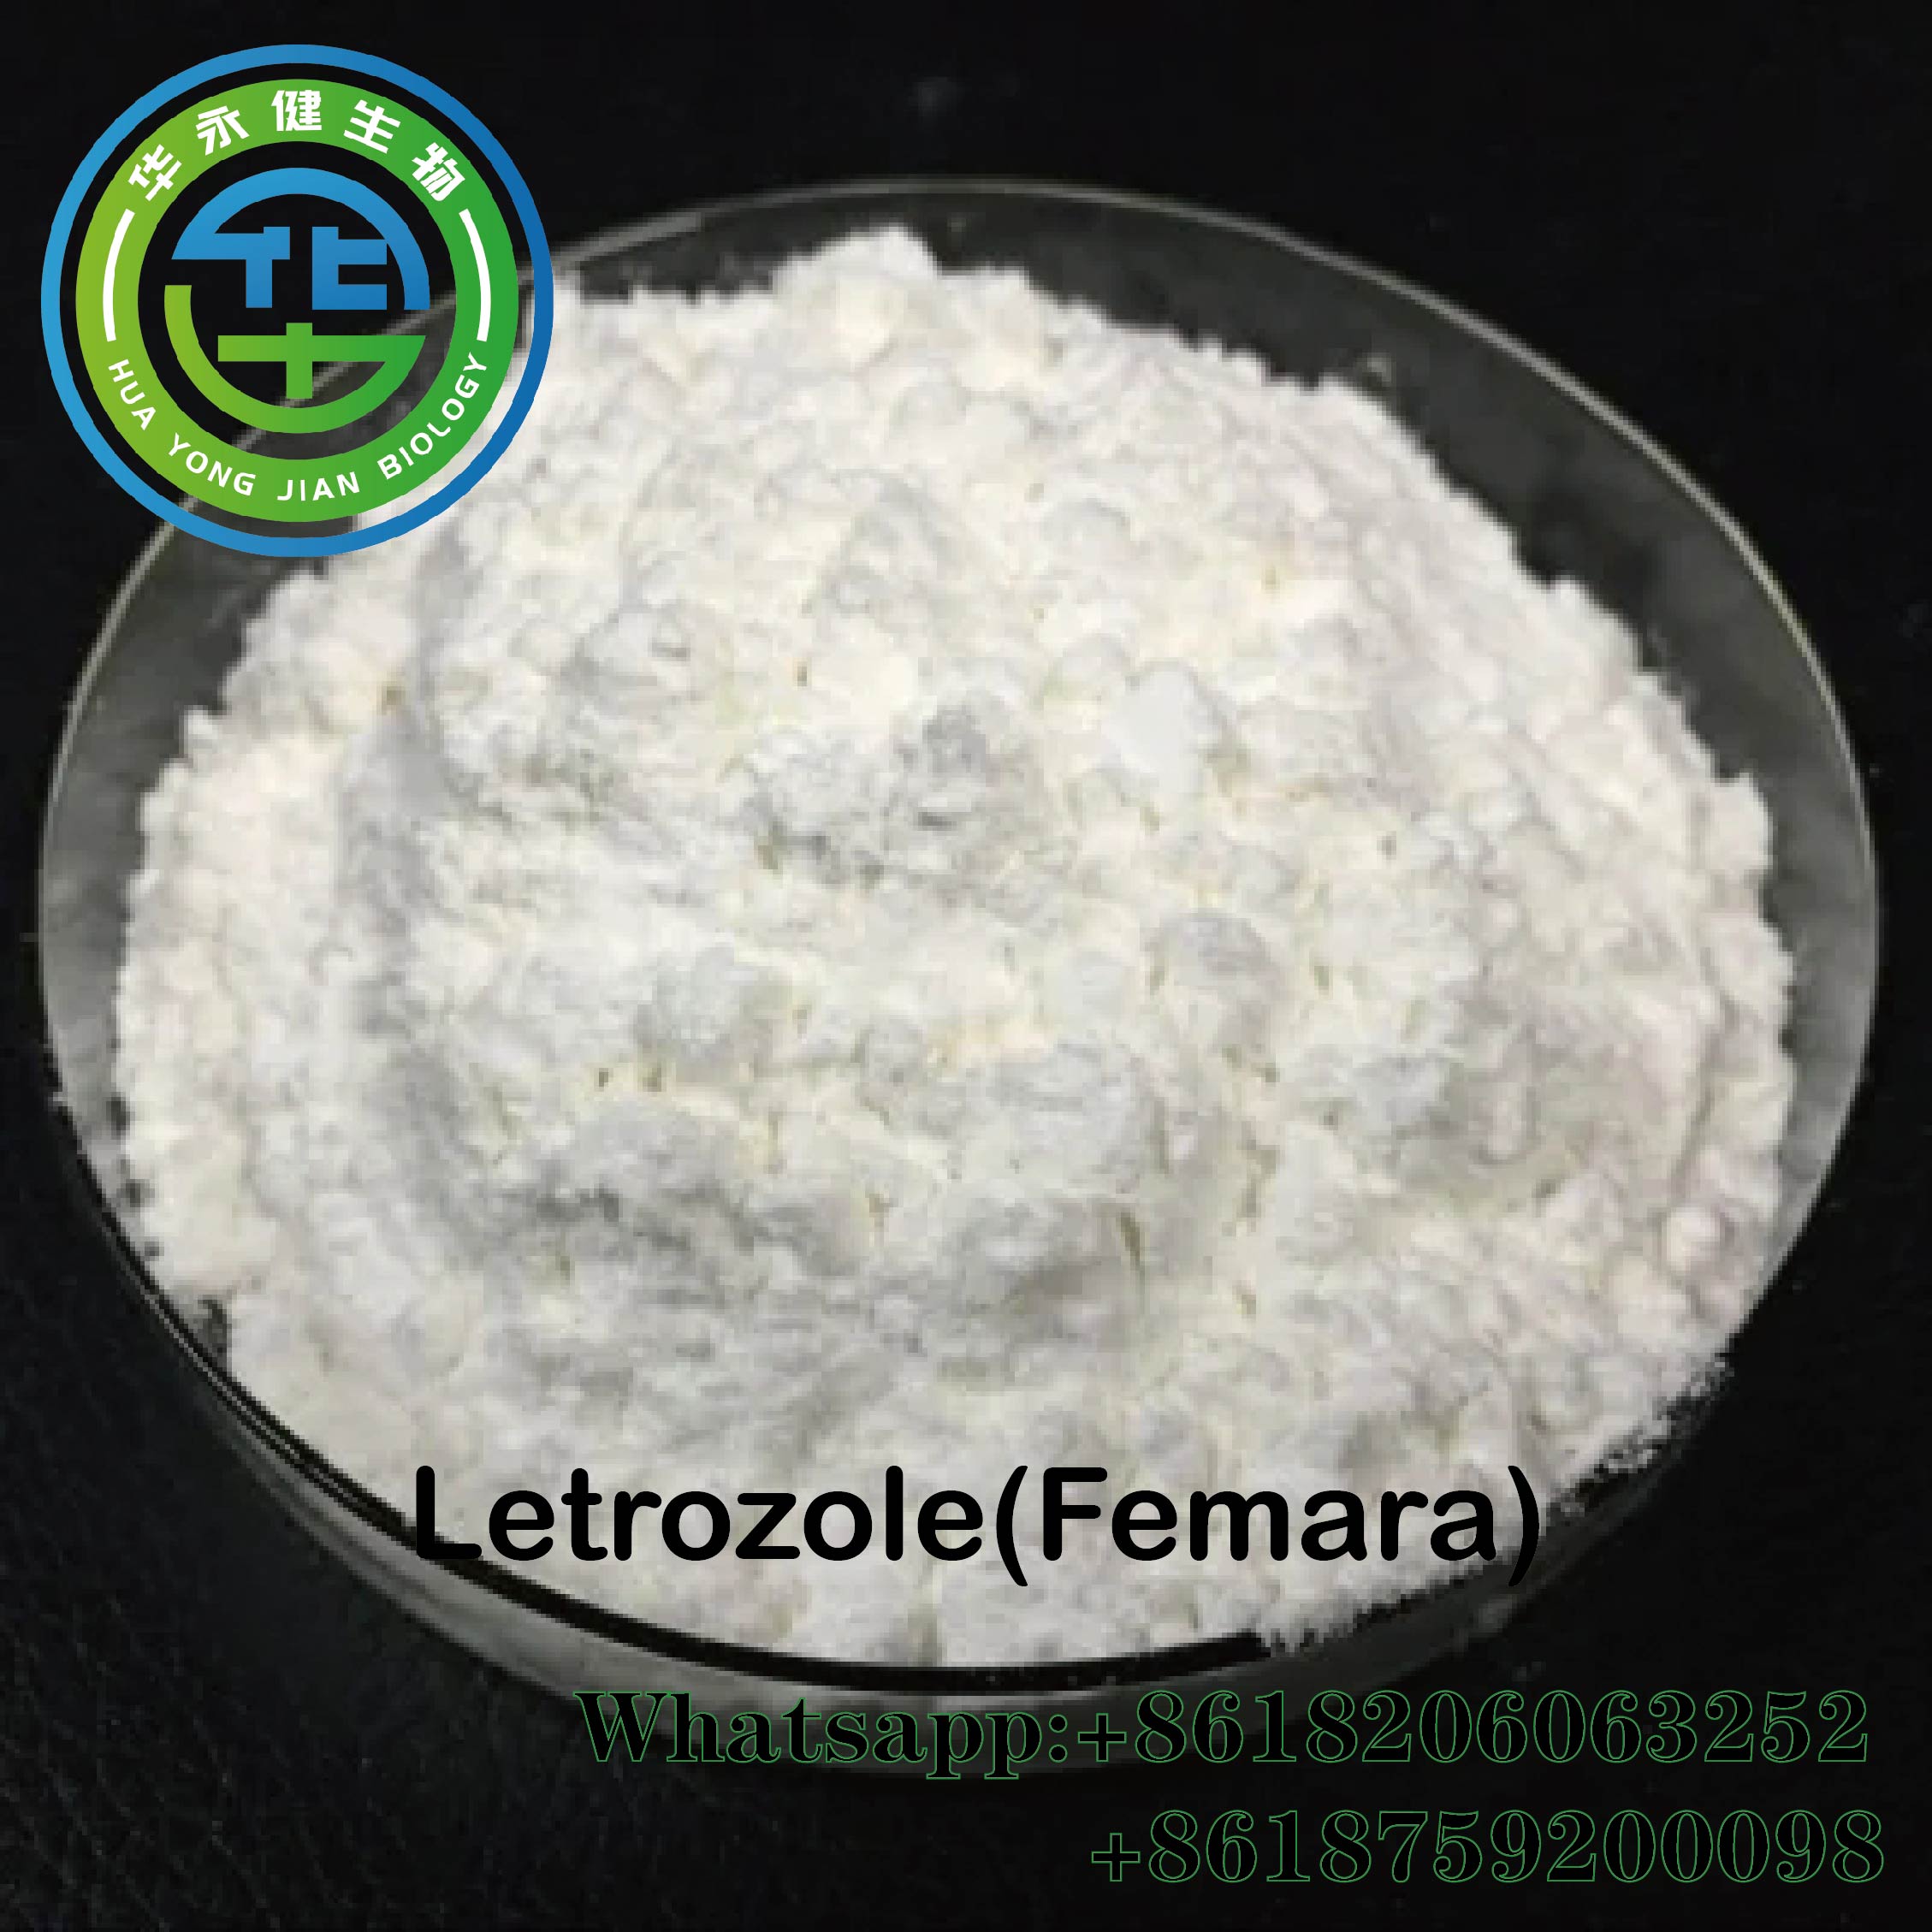 Anti Estrogen Anabolic Legal Steroids Letrozole/Femara raw steroid Powder For Breast Cancer CasNO.112809-51-5 